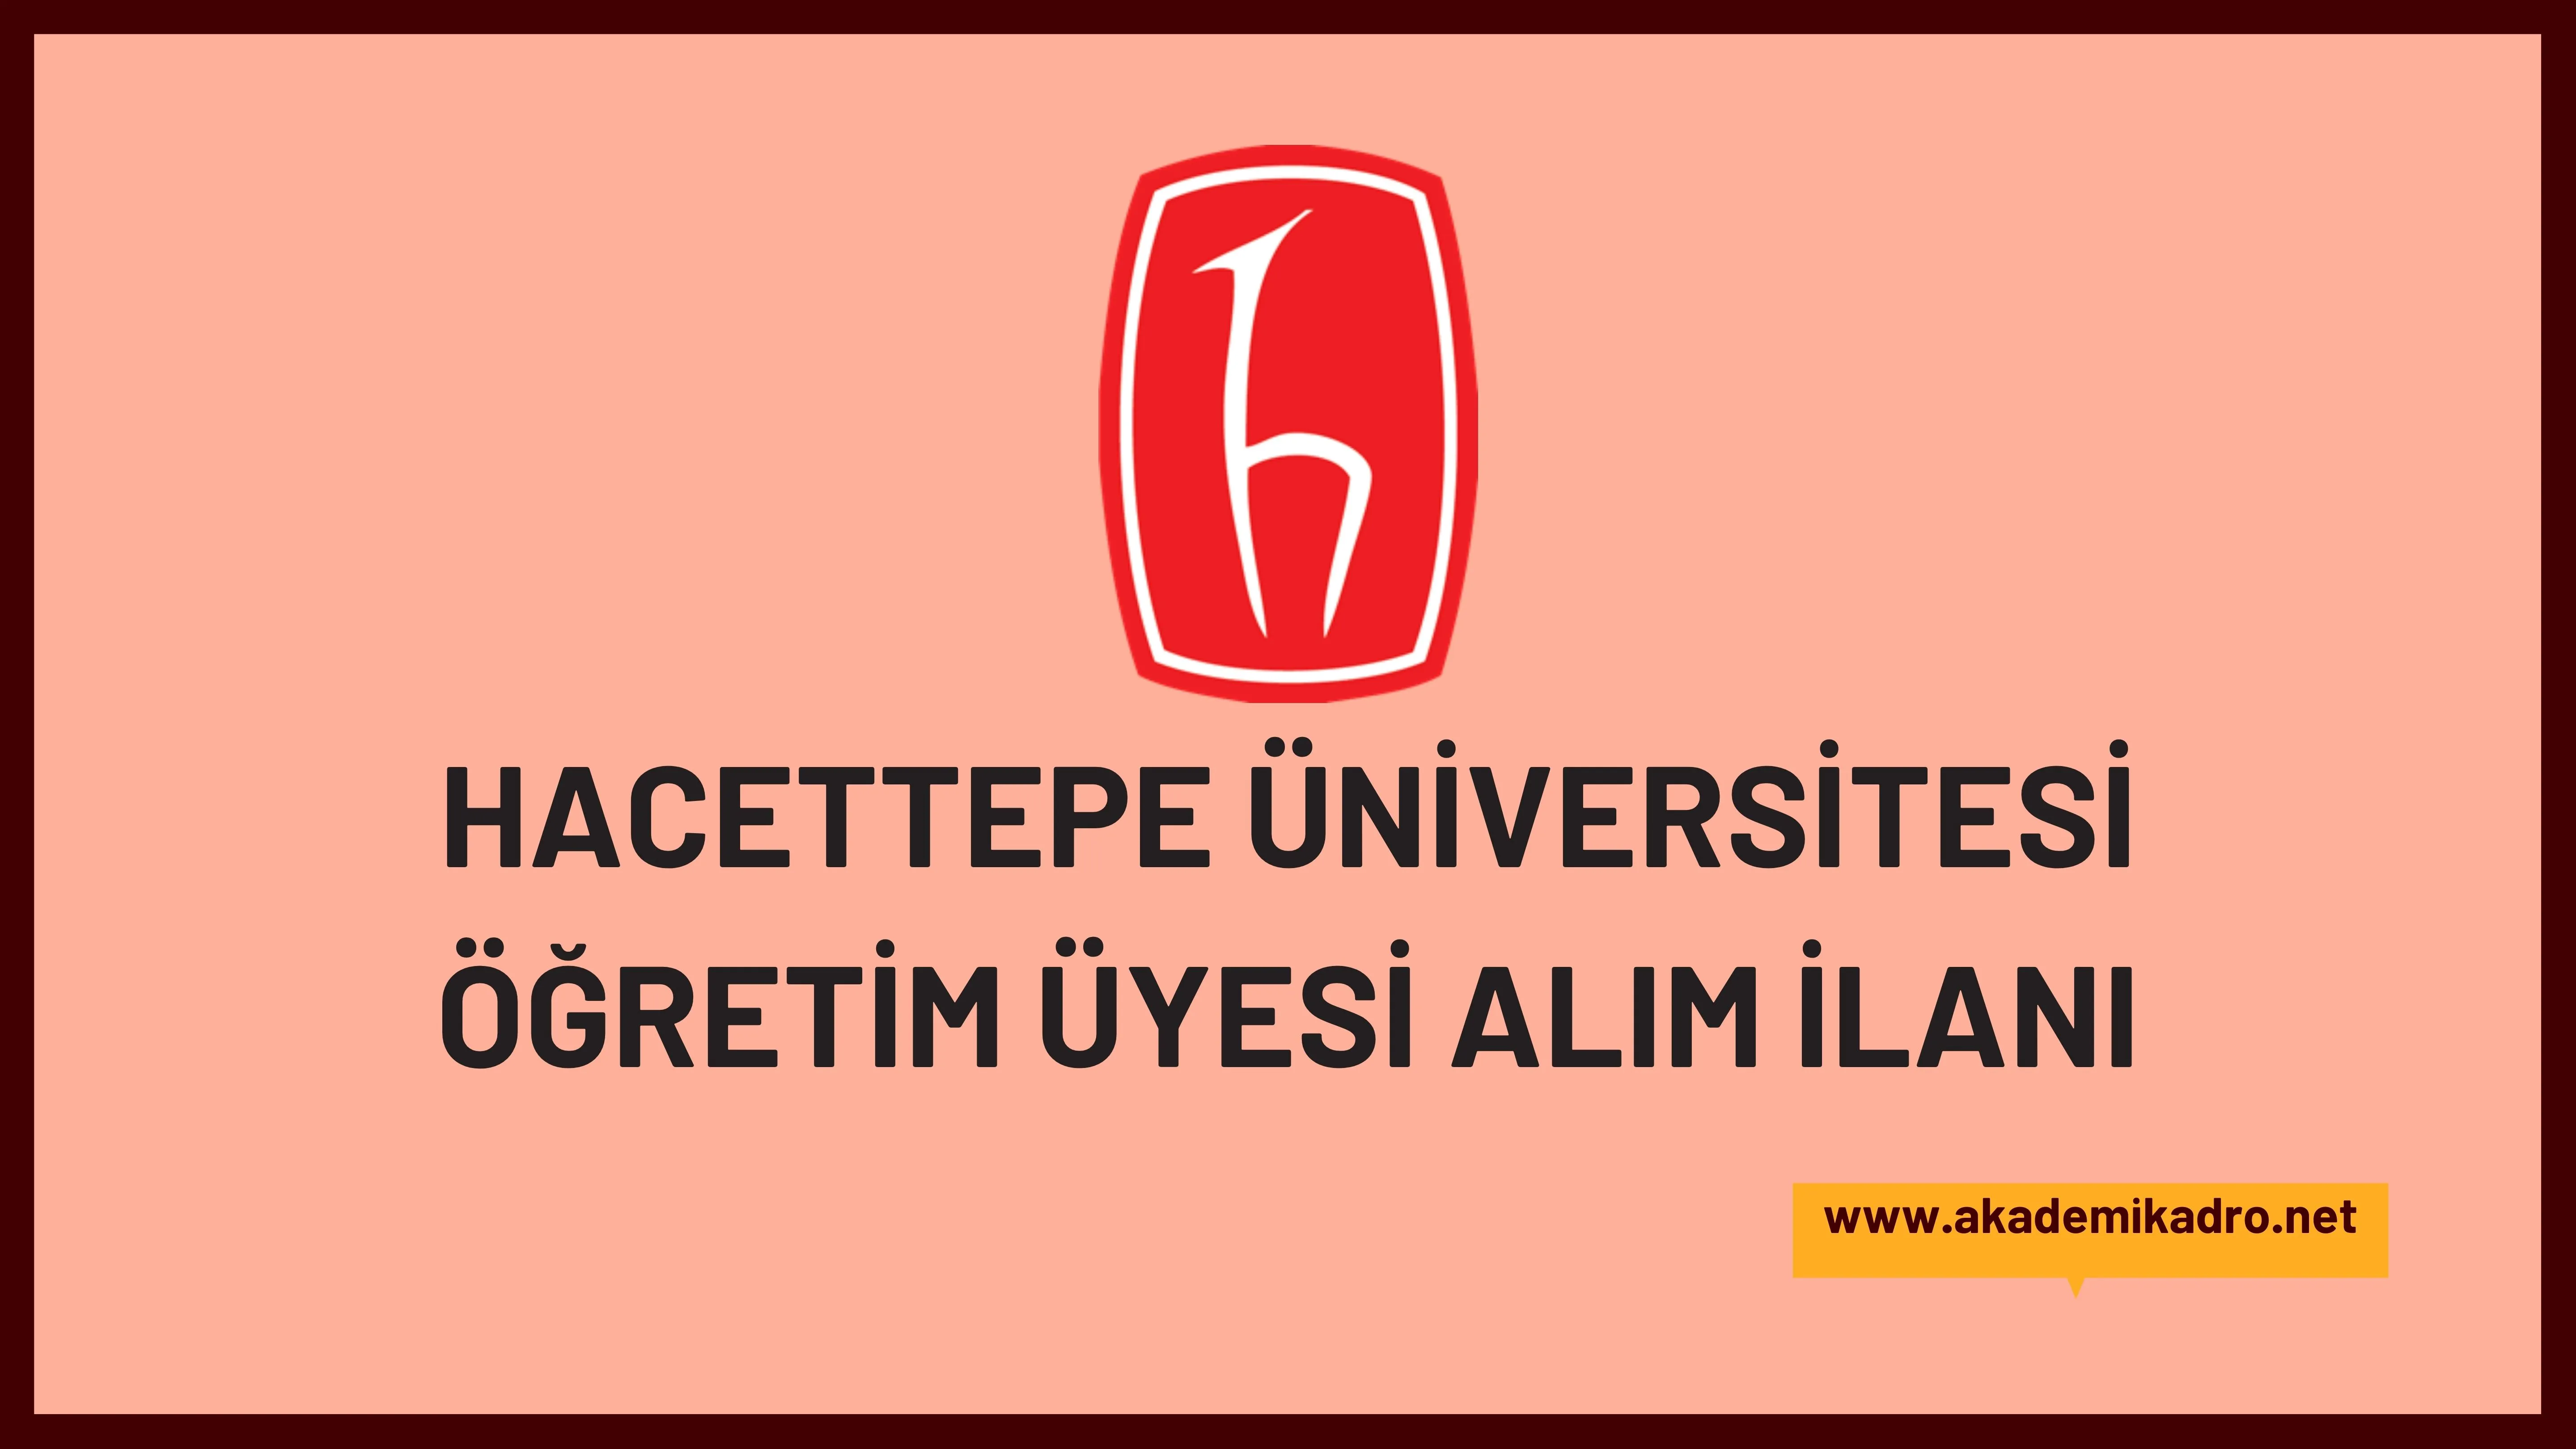 Hacettepe Üniversitesi birçok alandan 109 akademik personel alacak.